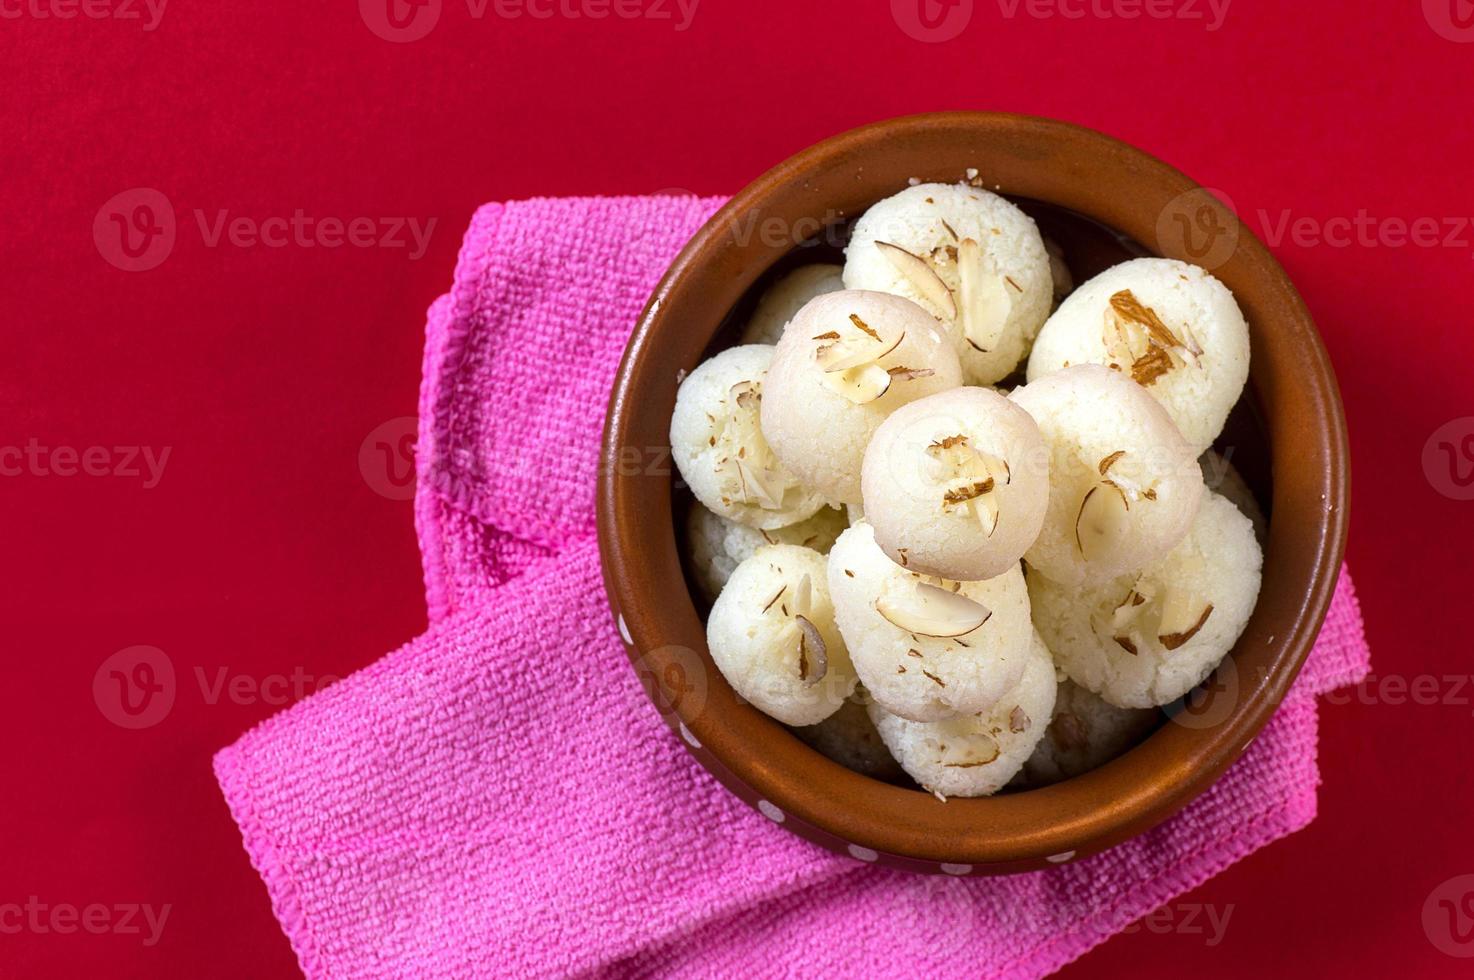 doce indiano ou sobremesa - rasgulla, famoso doce bengali em tigela de barro com guardanapo sobre fundo vermelho foto